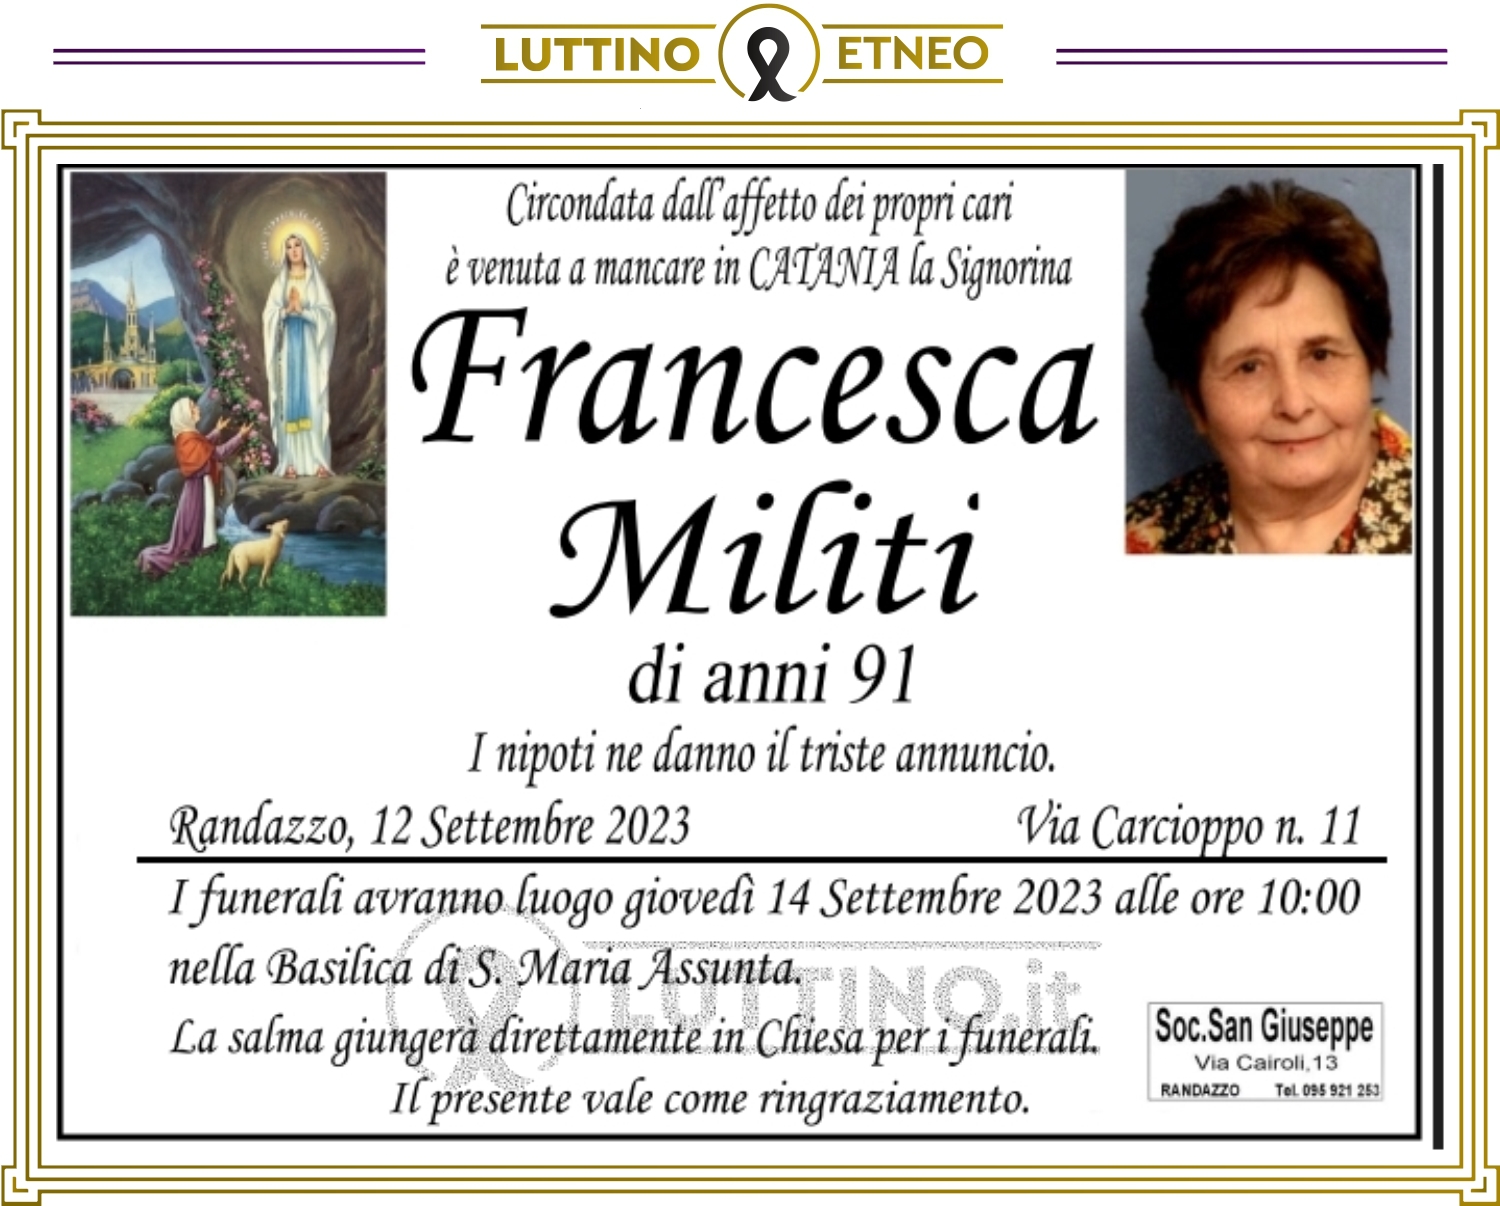 Francesca Militi